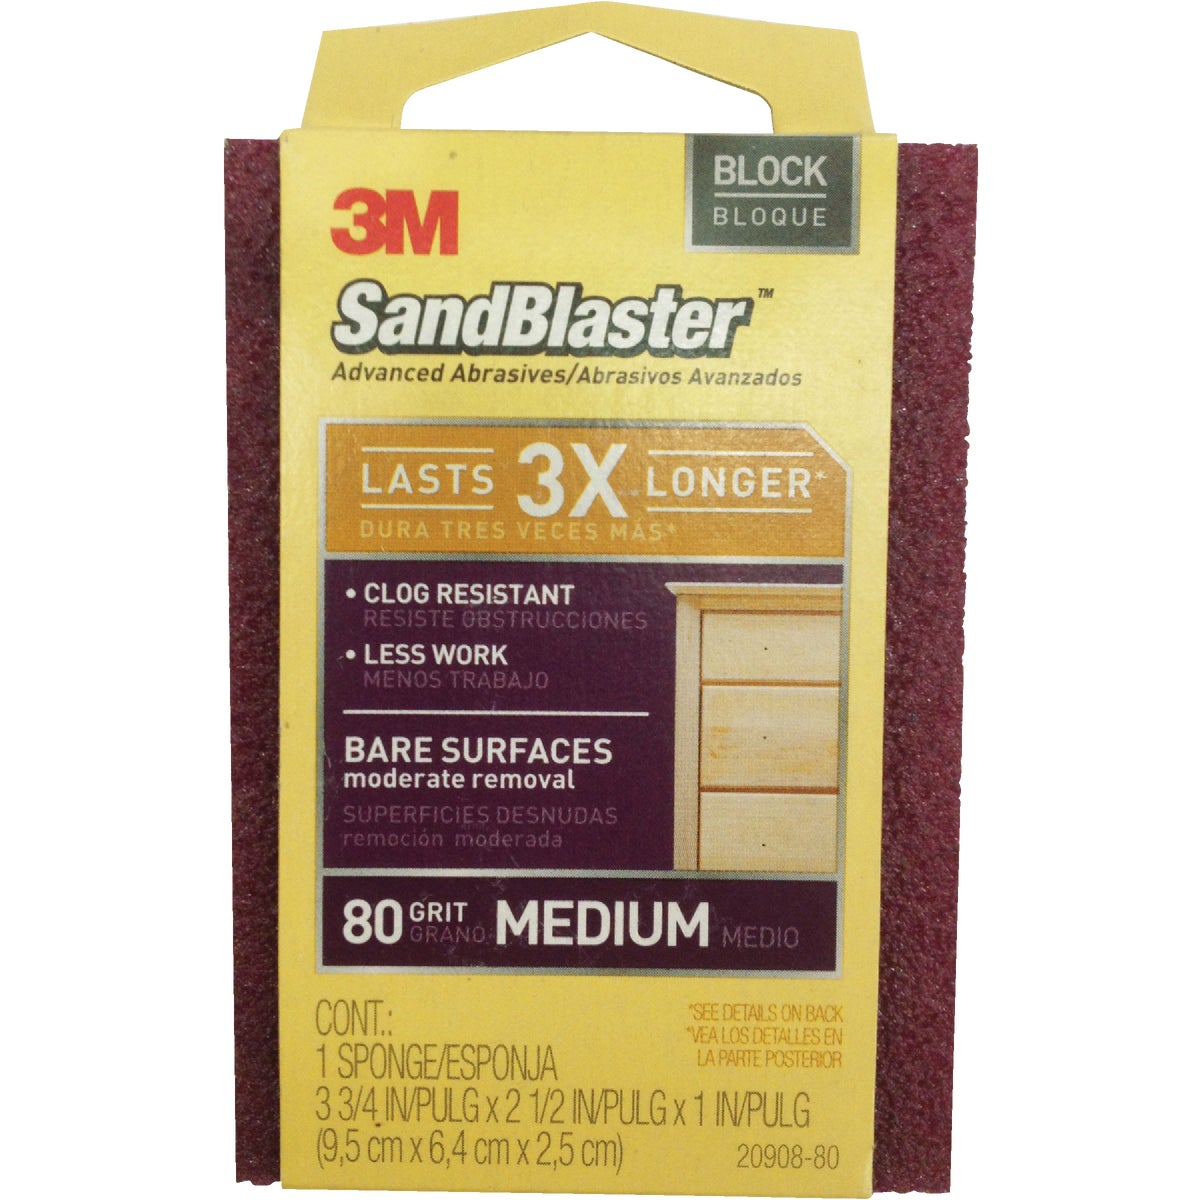 3M SandBlaster Bare Surfaces 2-1/2 In. x 3-3/4 In. x 1 In. 80 Grit Medium Sanding Sponge